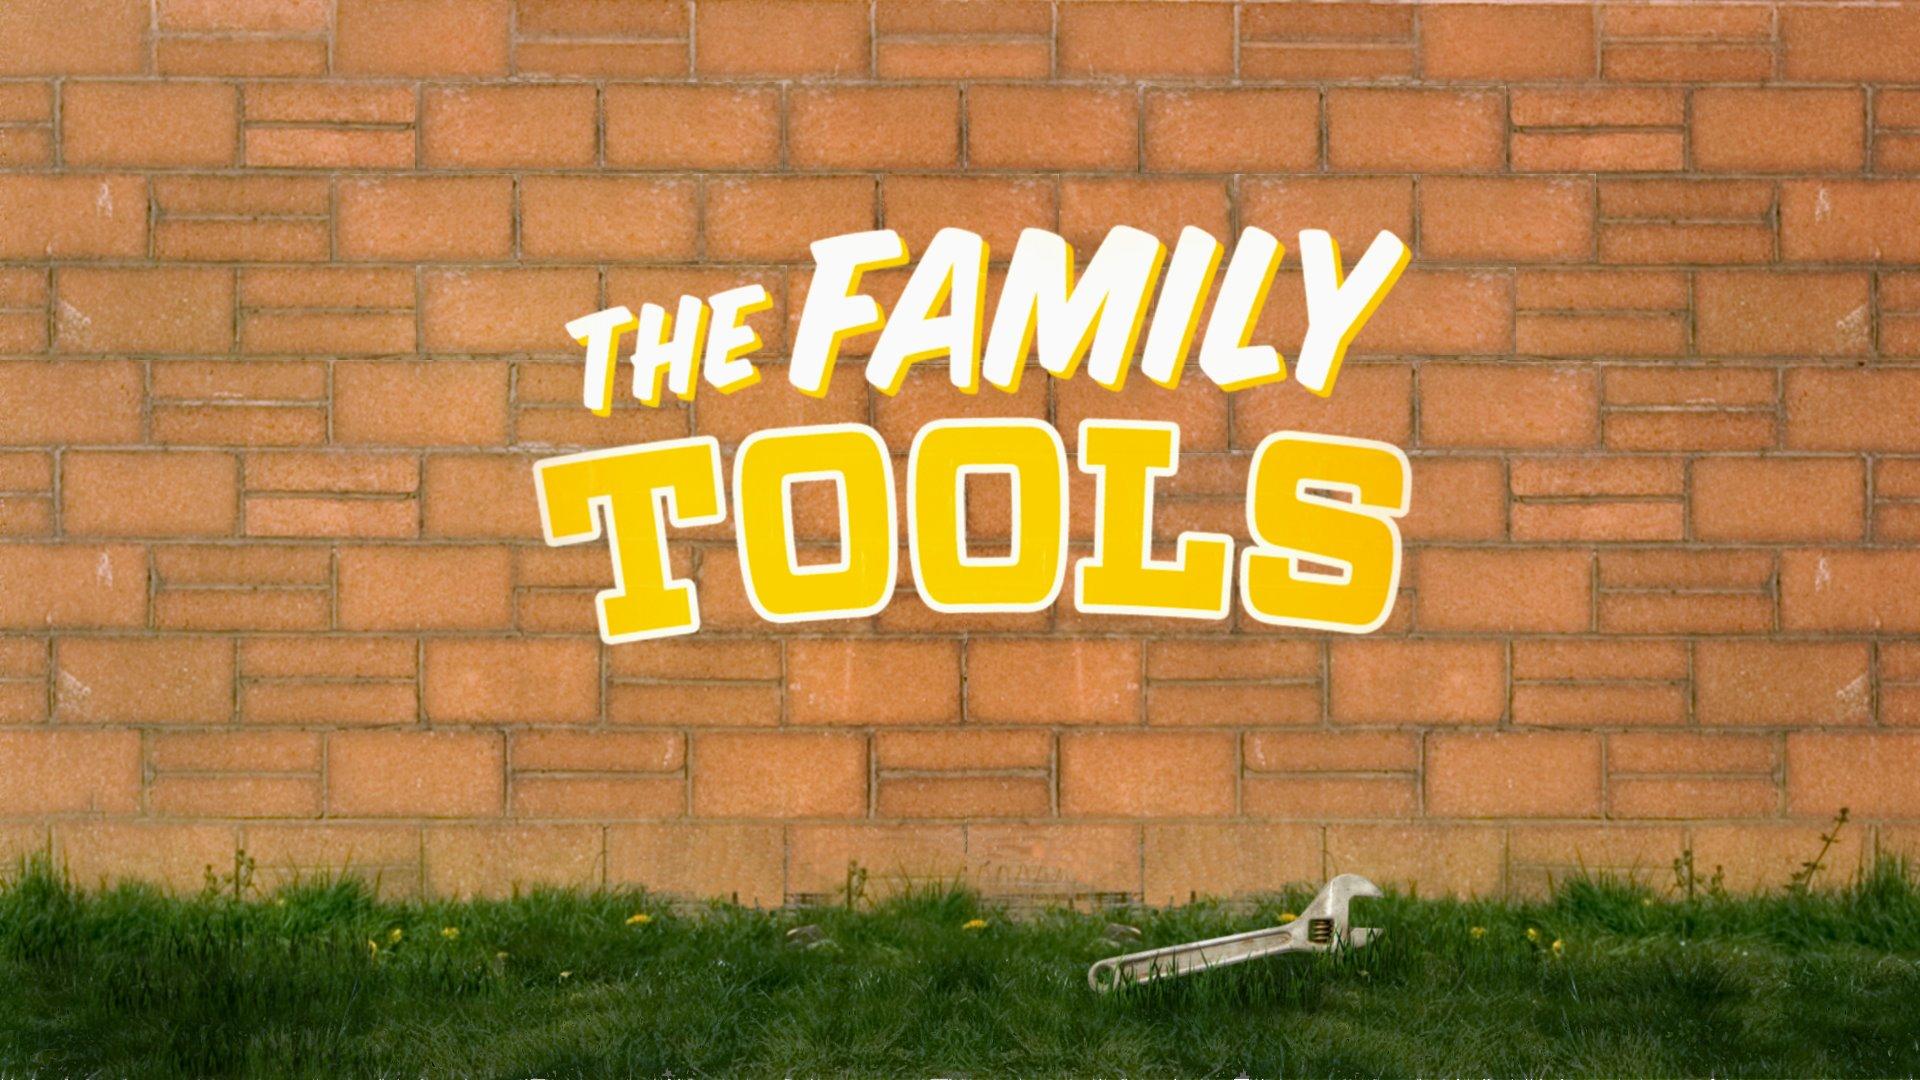 Family Toolkit. Family tools